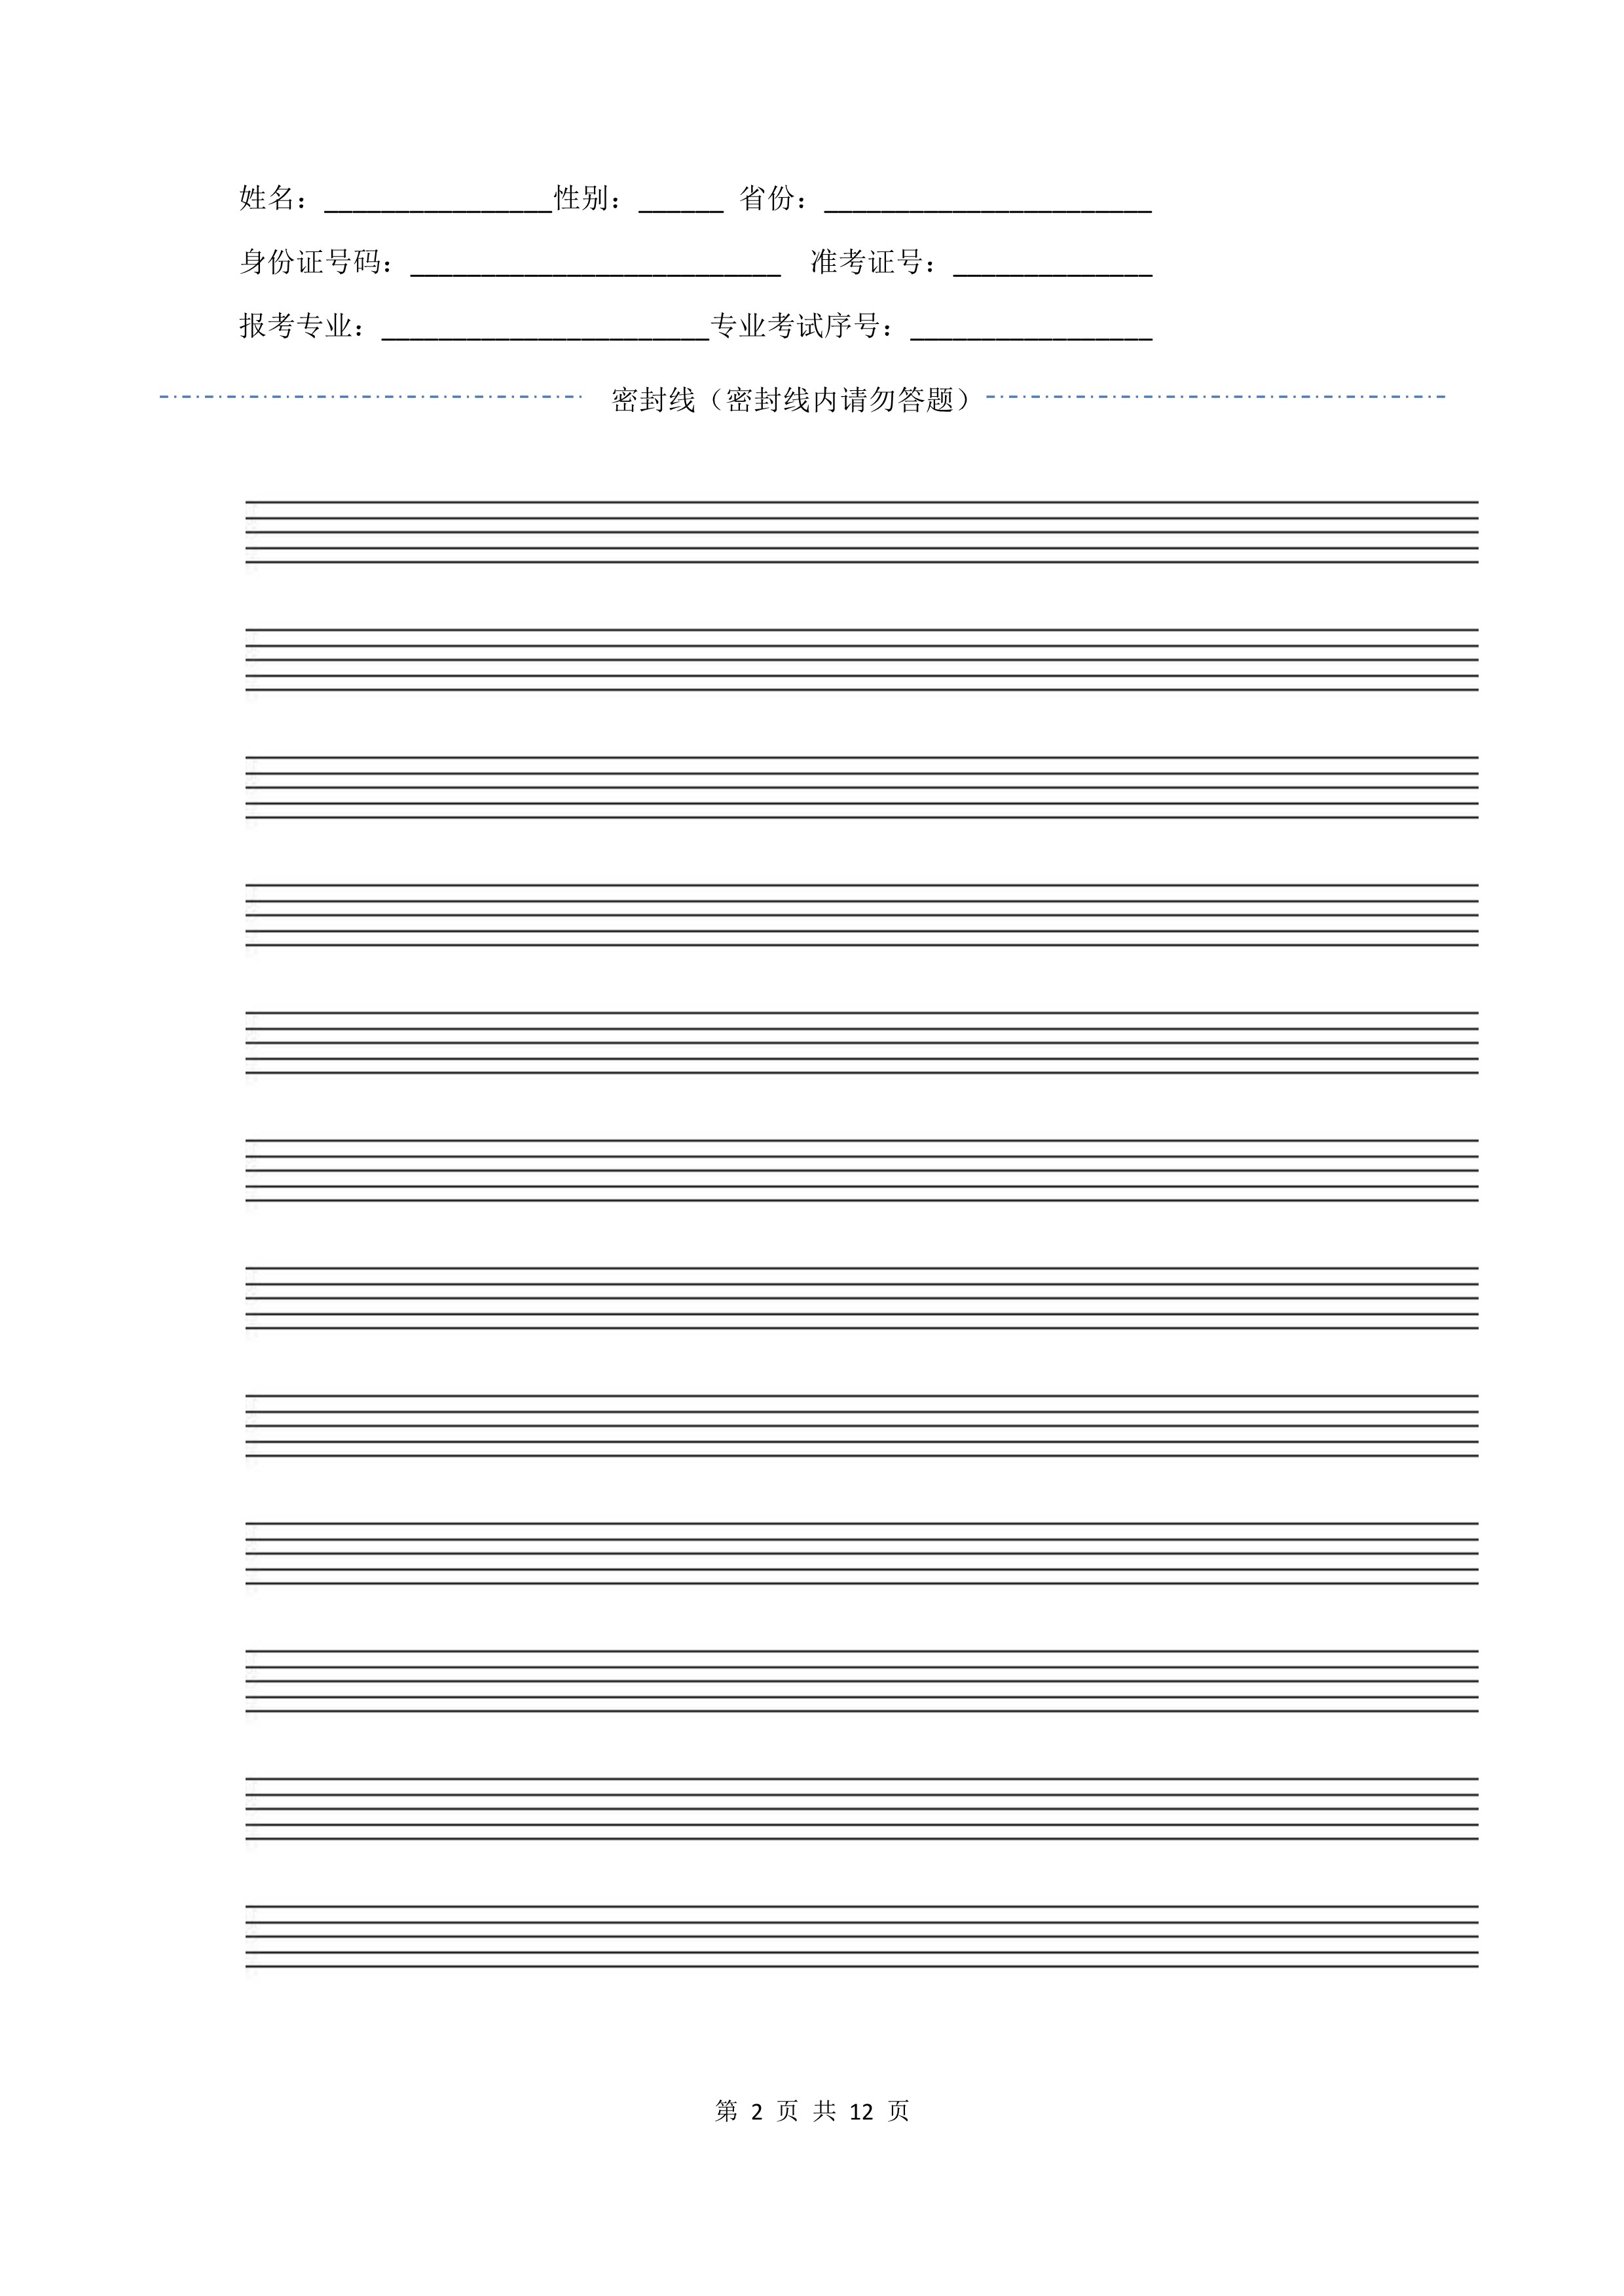 南京艺术学院2022年本科招生作曲与作曲技术理论、作曲与作曲技术理论（计算机作曲）专业《器乐曲写作》科目考试答题纸及草稿纸_2 - 副本.jpg